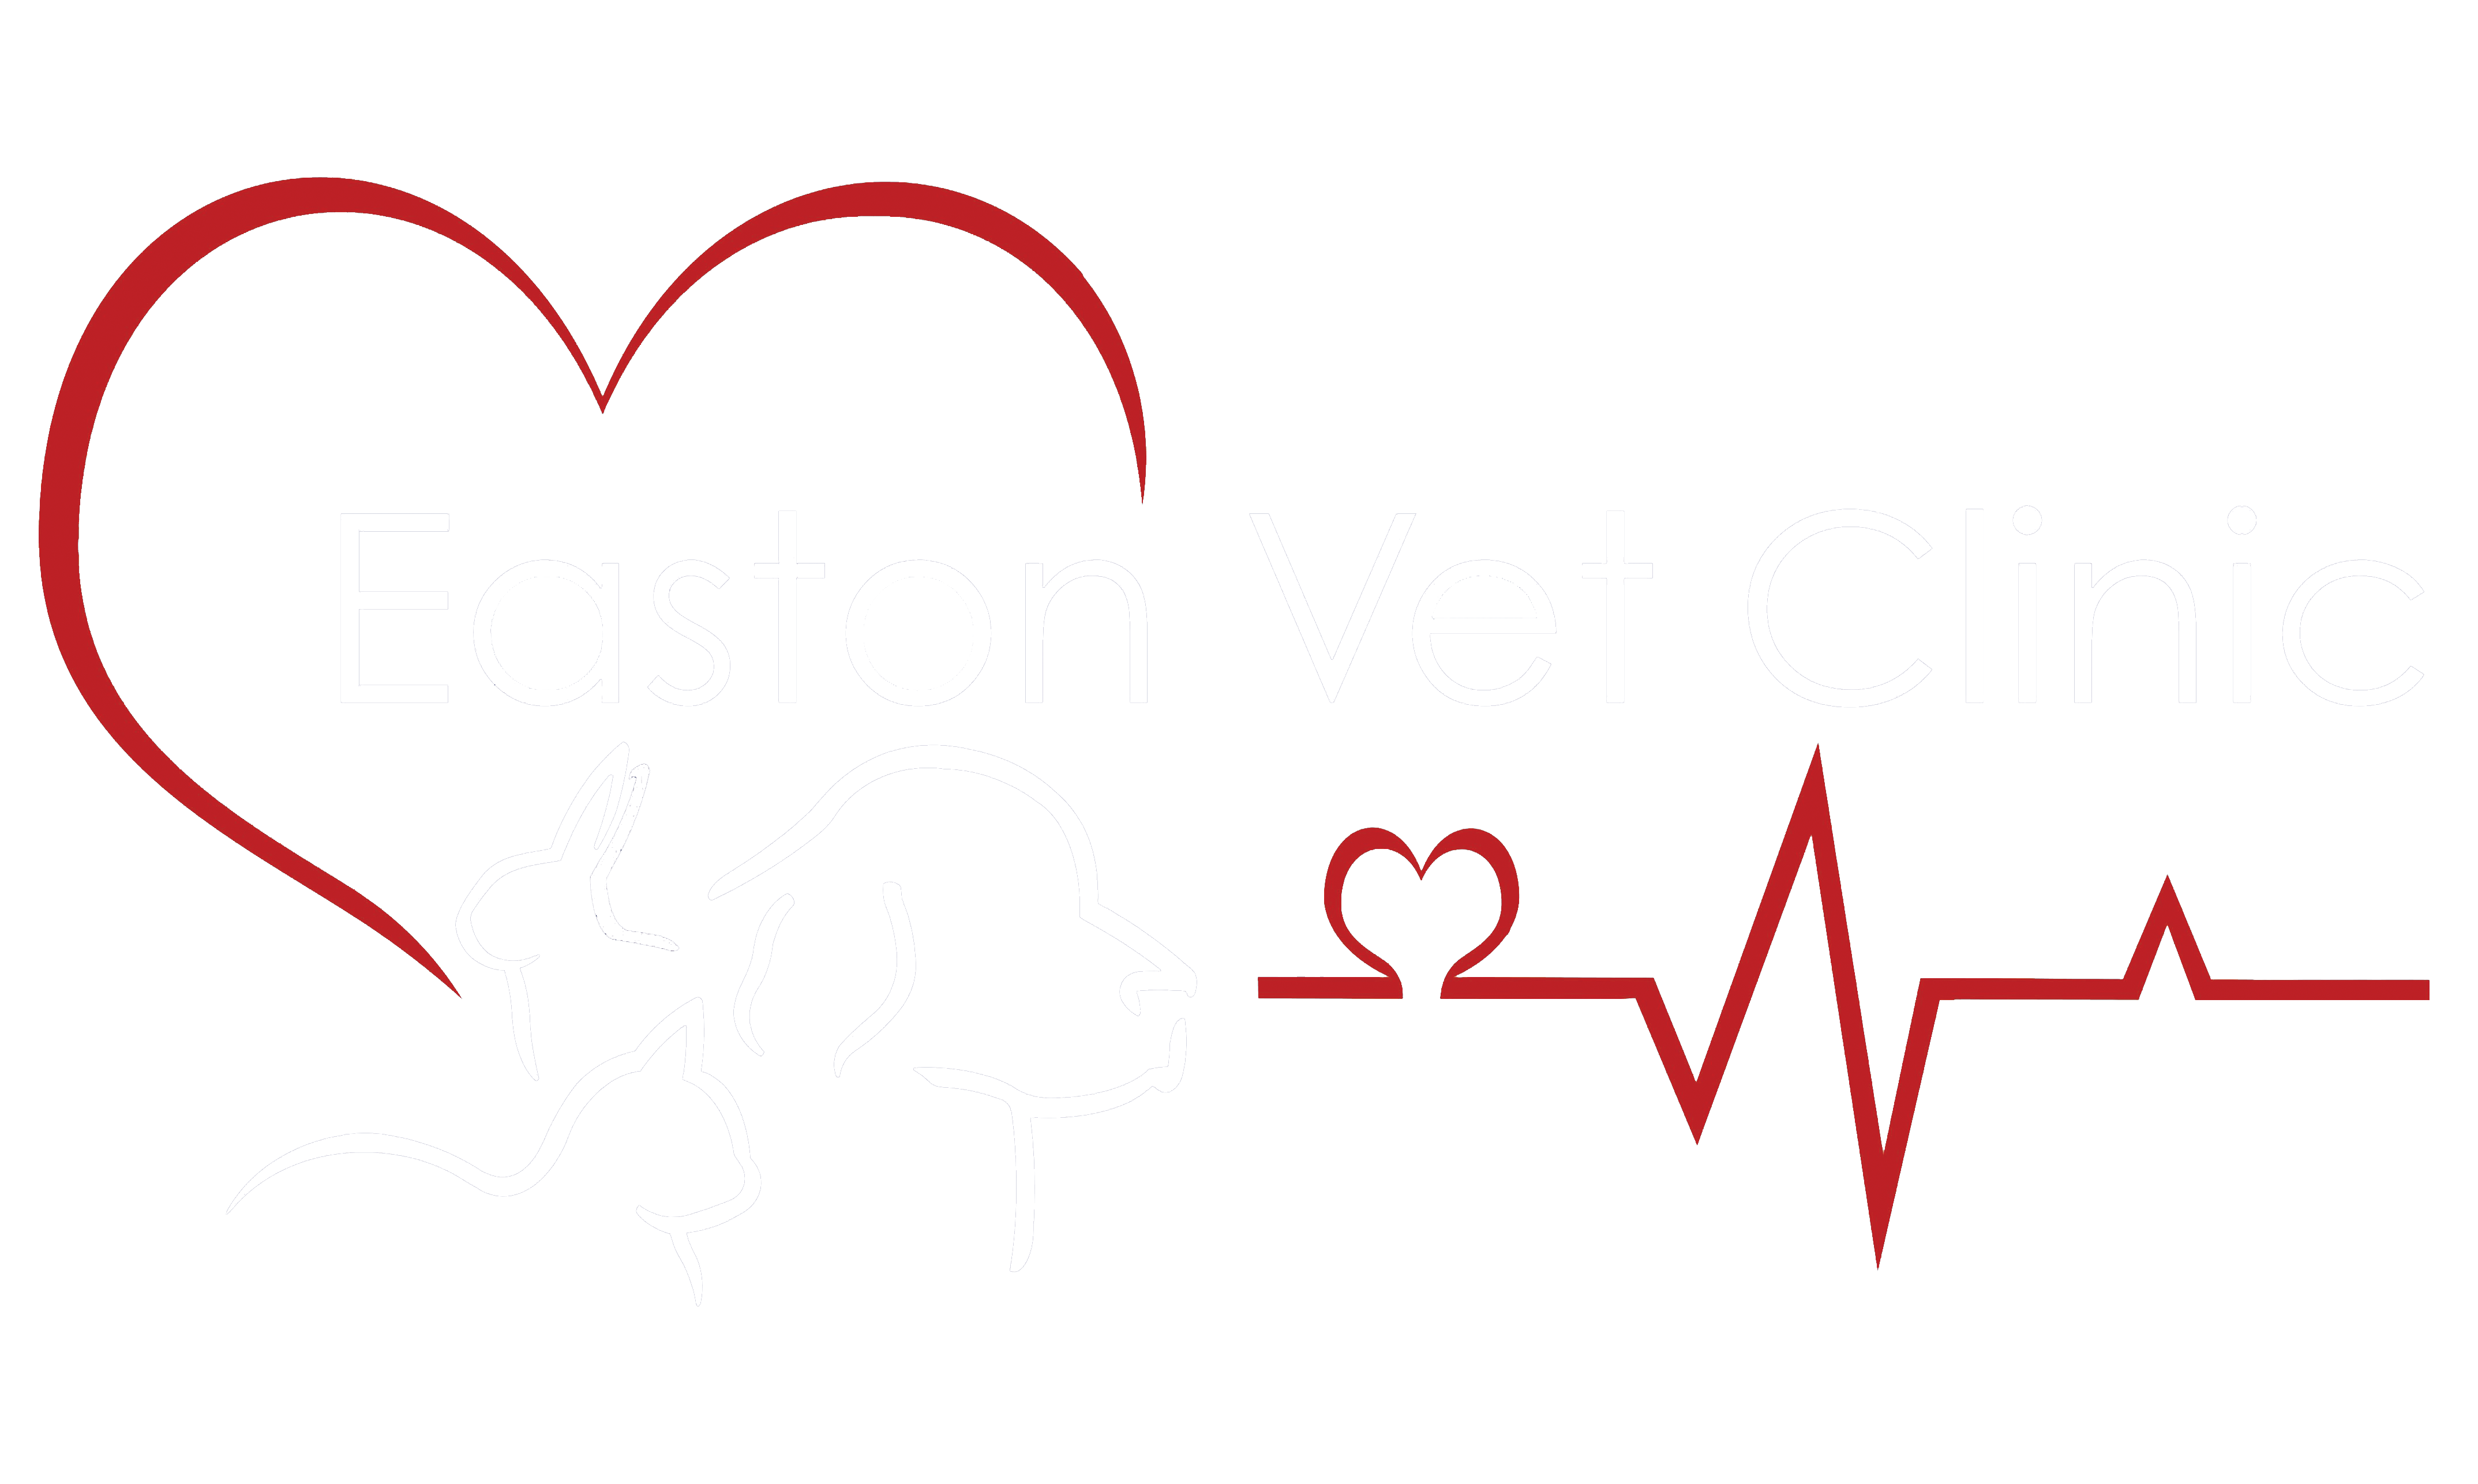 Easton Vet Clinic & Rehabilitation Center